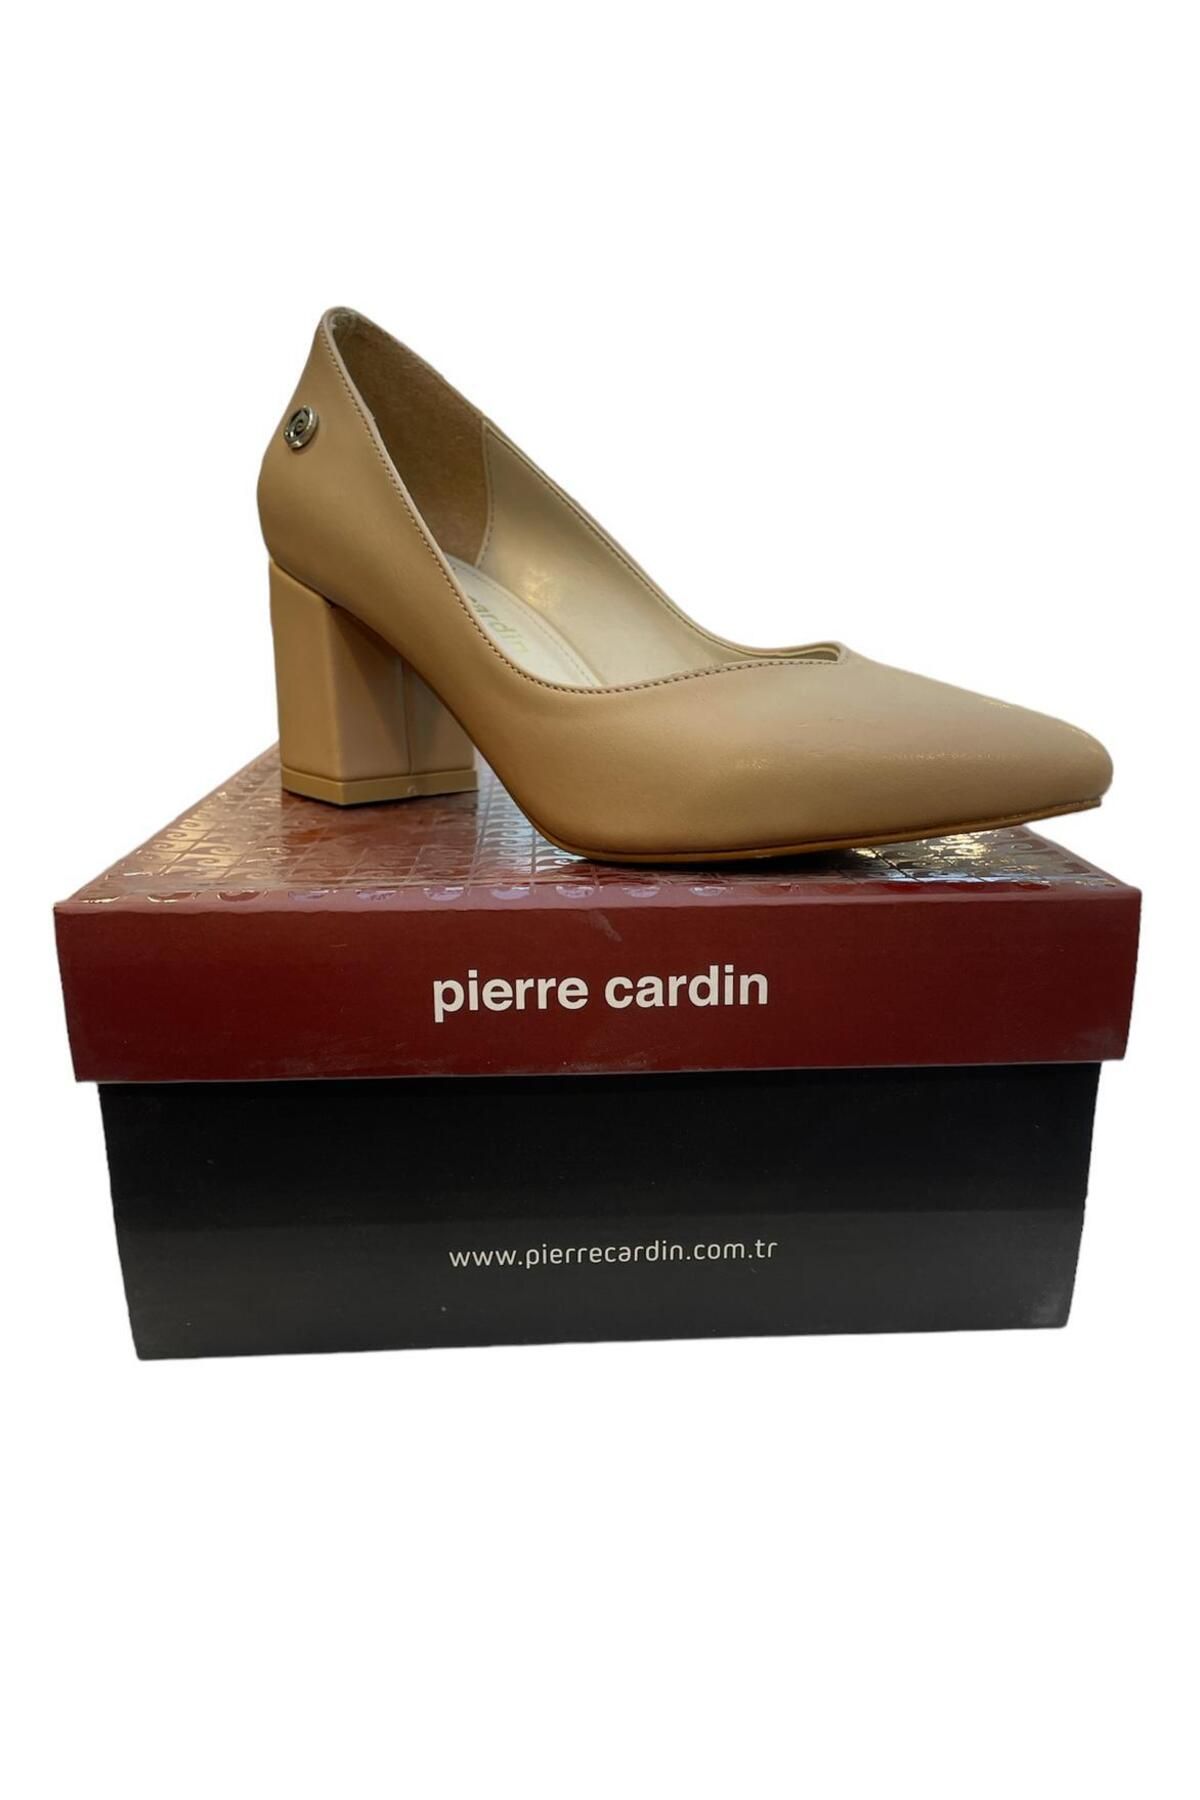 Pierre Cardin Krem Rengi Topuklu Ayakkabı